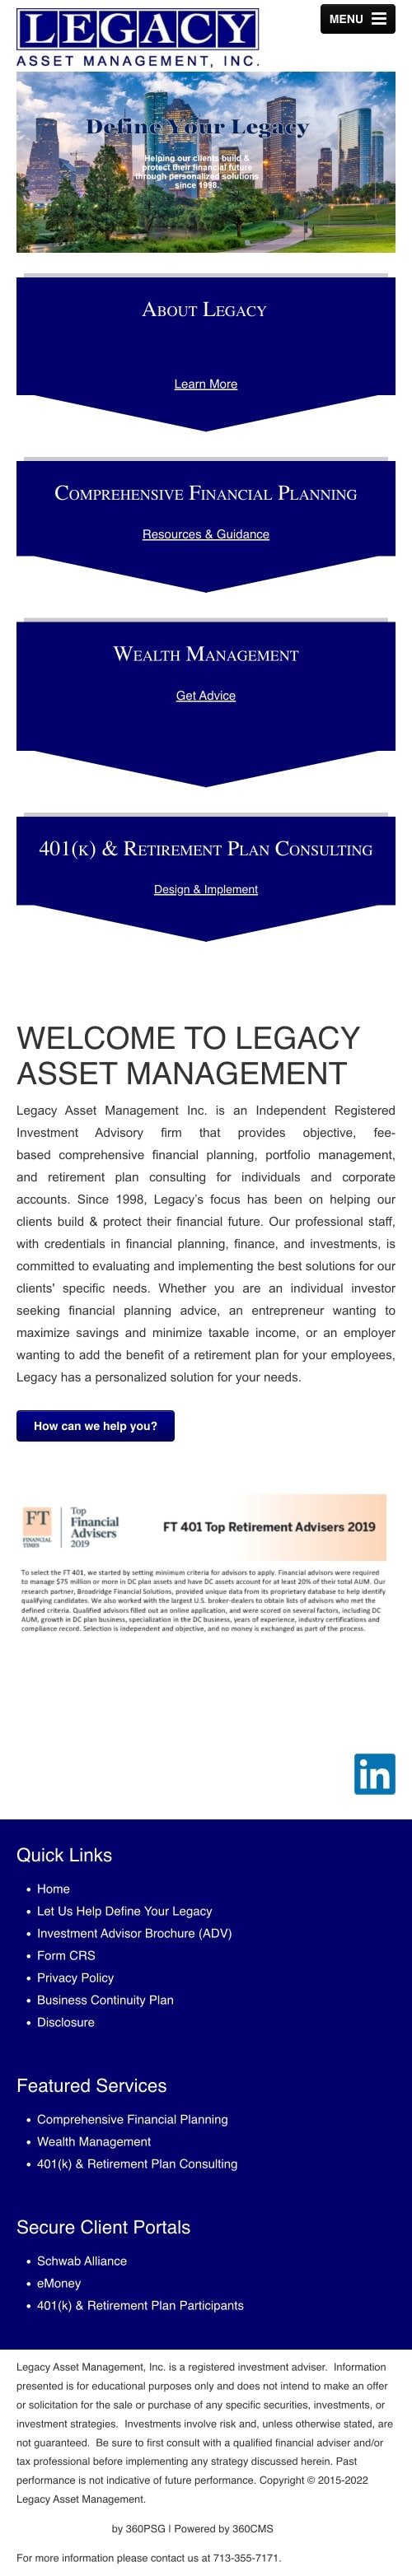 Legacy Asset Management Website - Mobile